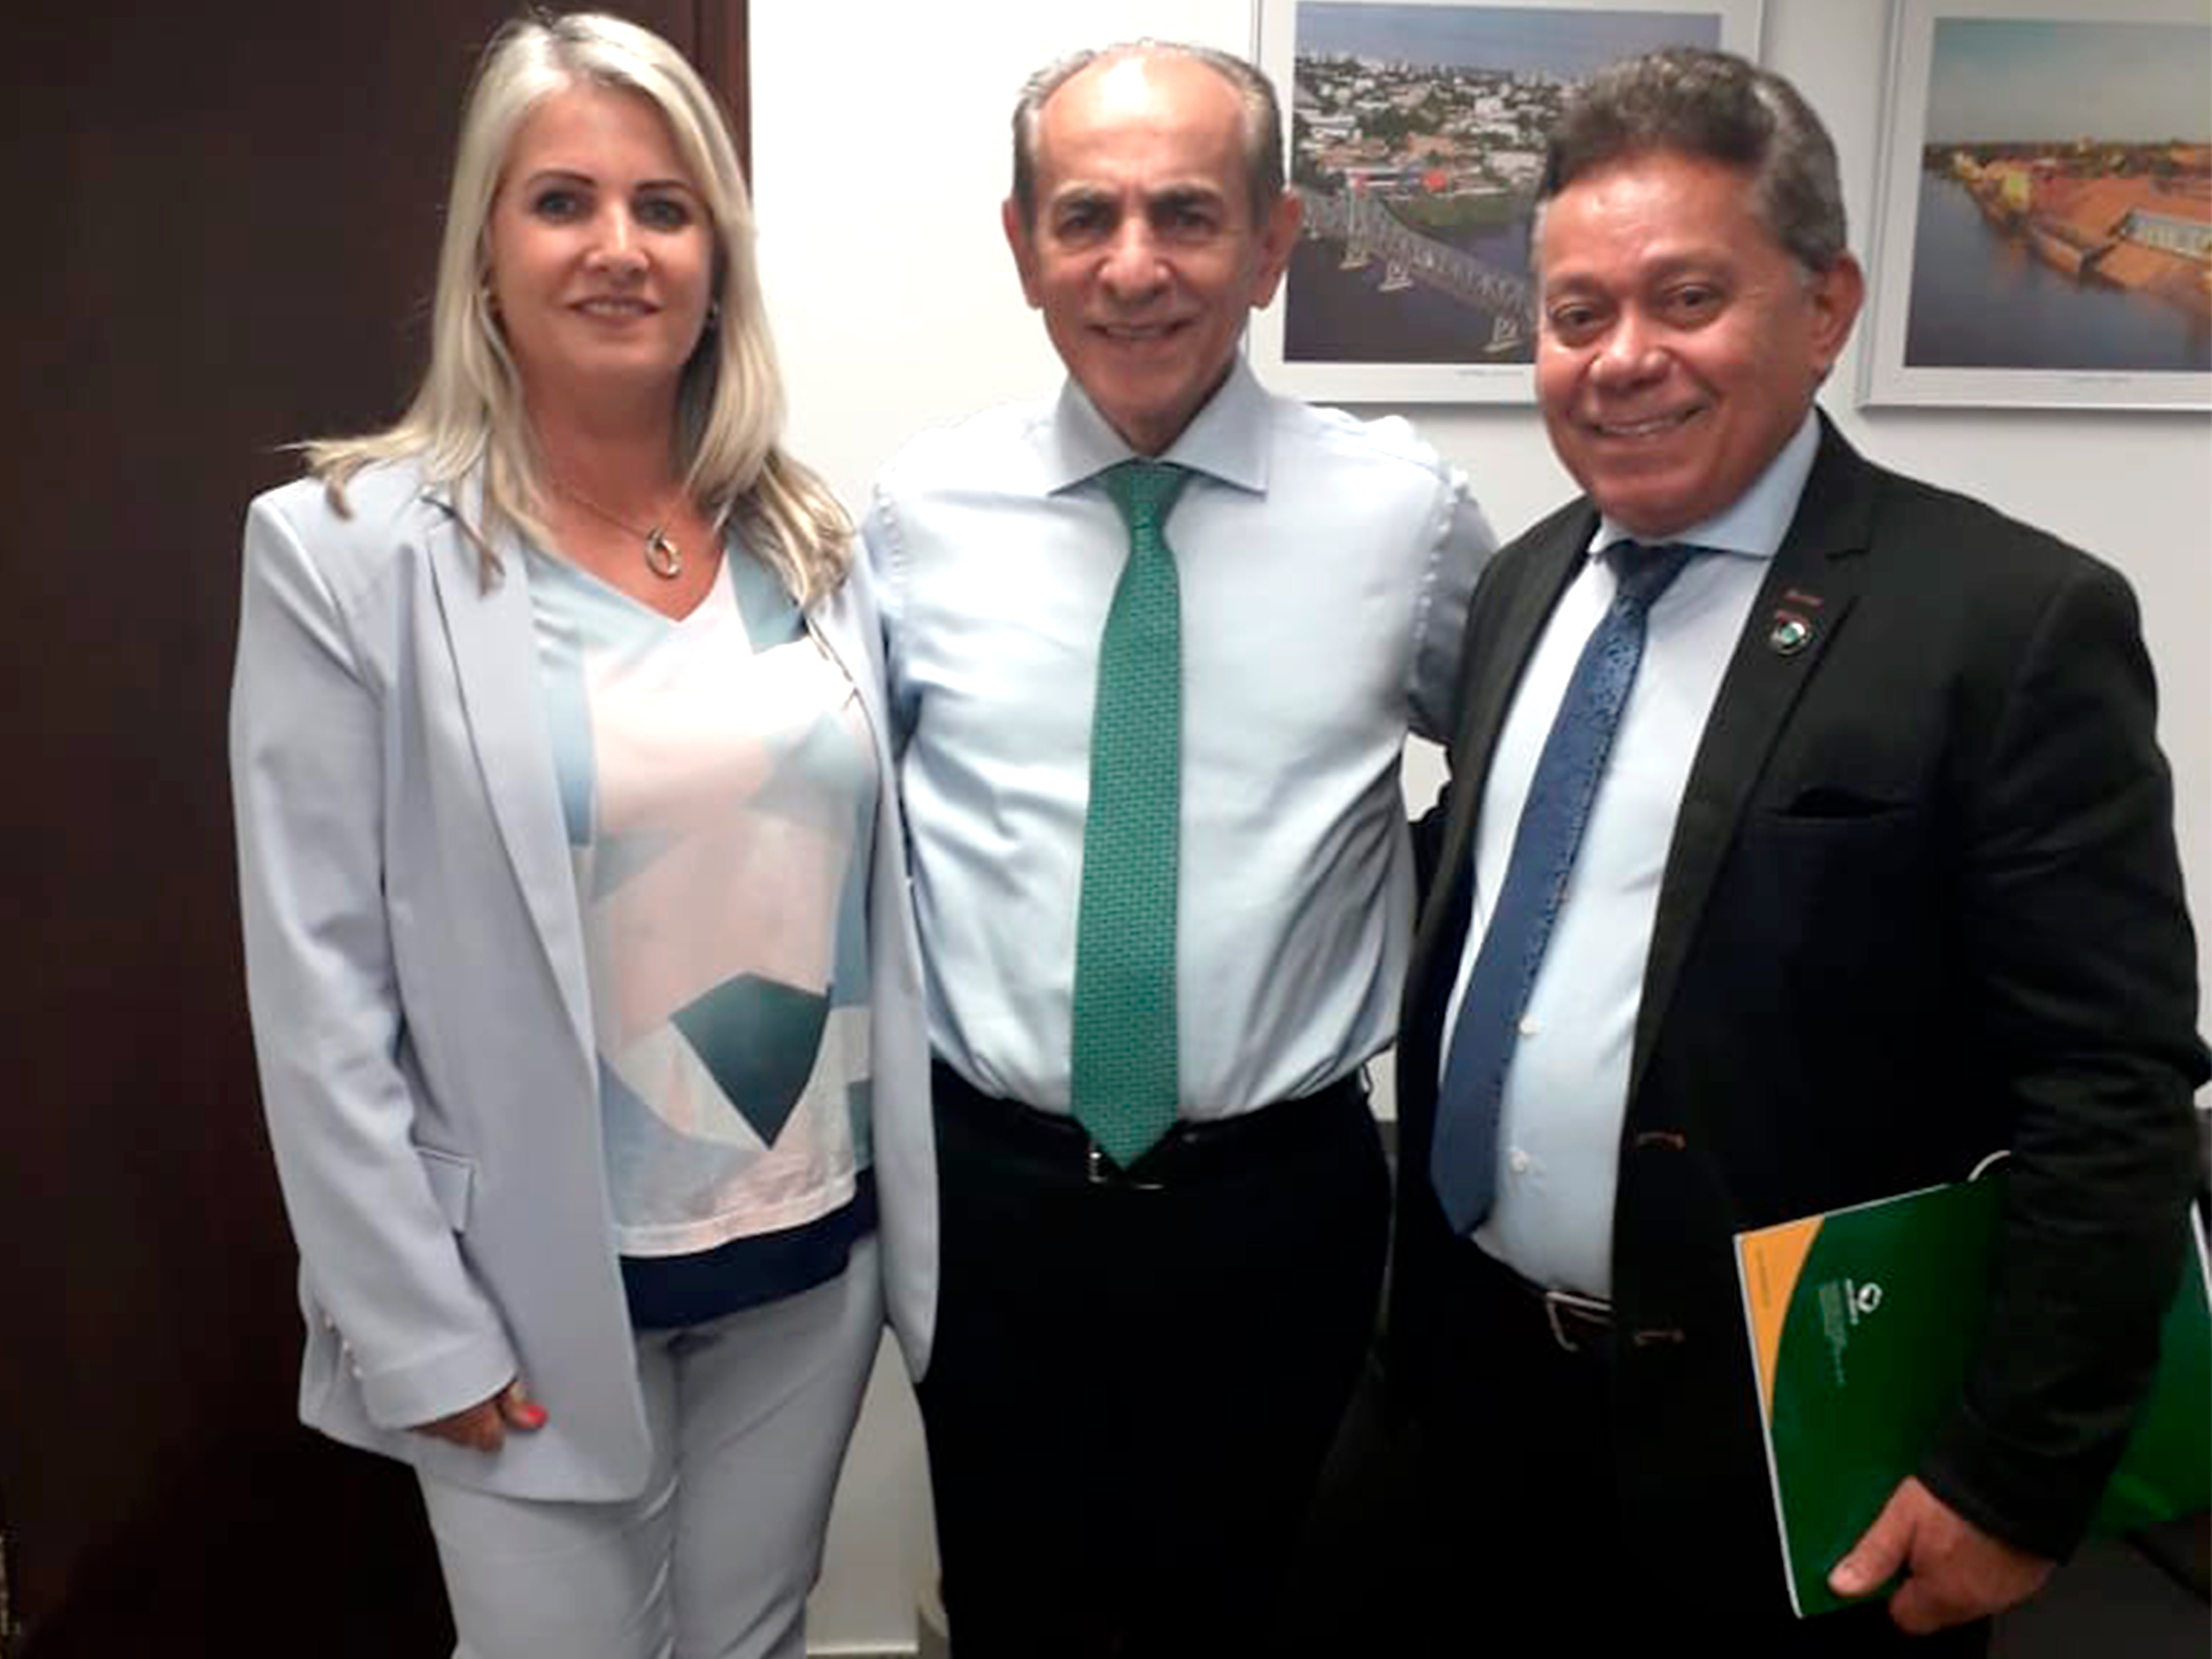 Senador Marcelo Castro - MDB/PI em companhia de dirigentes do Anffa Sindical